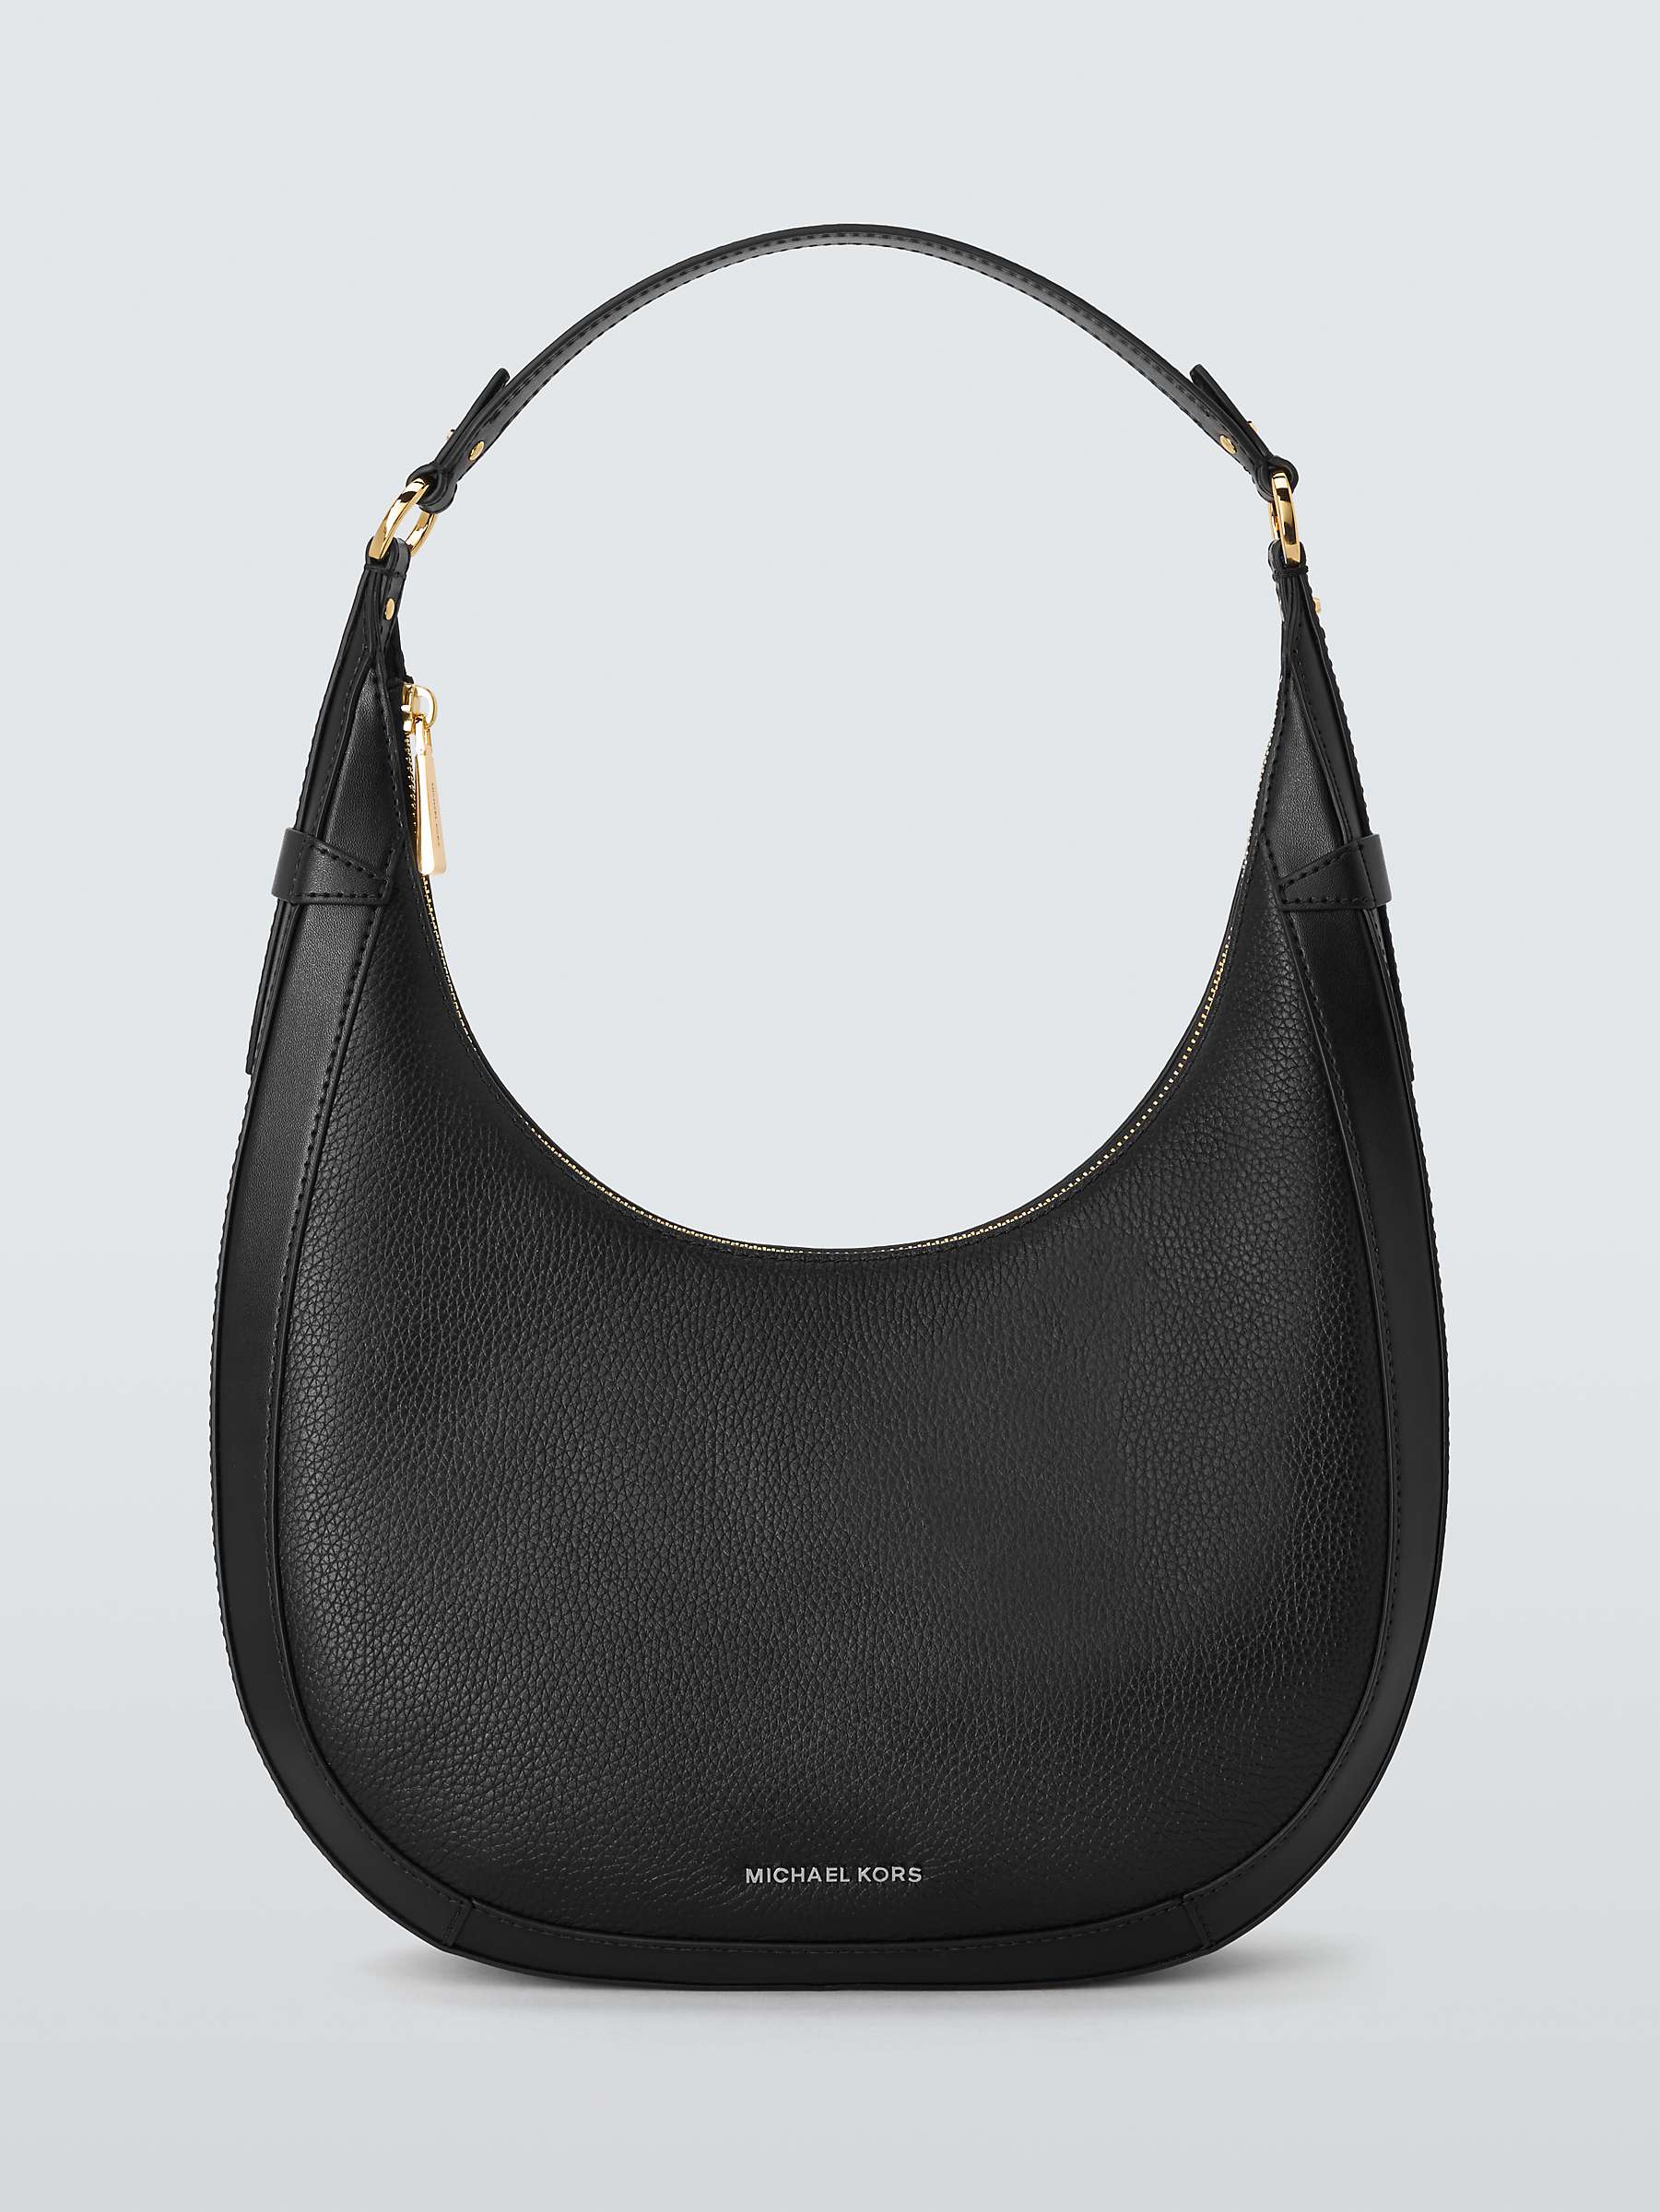 Buy Michael Kors Preston Leather Hobo Shoulder Bag, Black Online at johnlewis.com